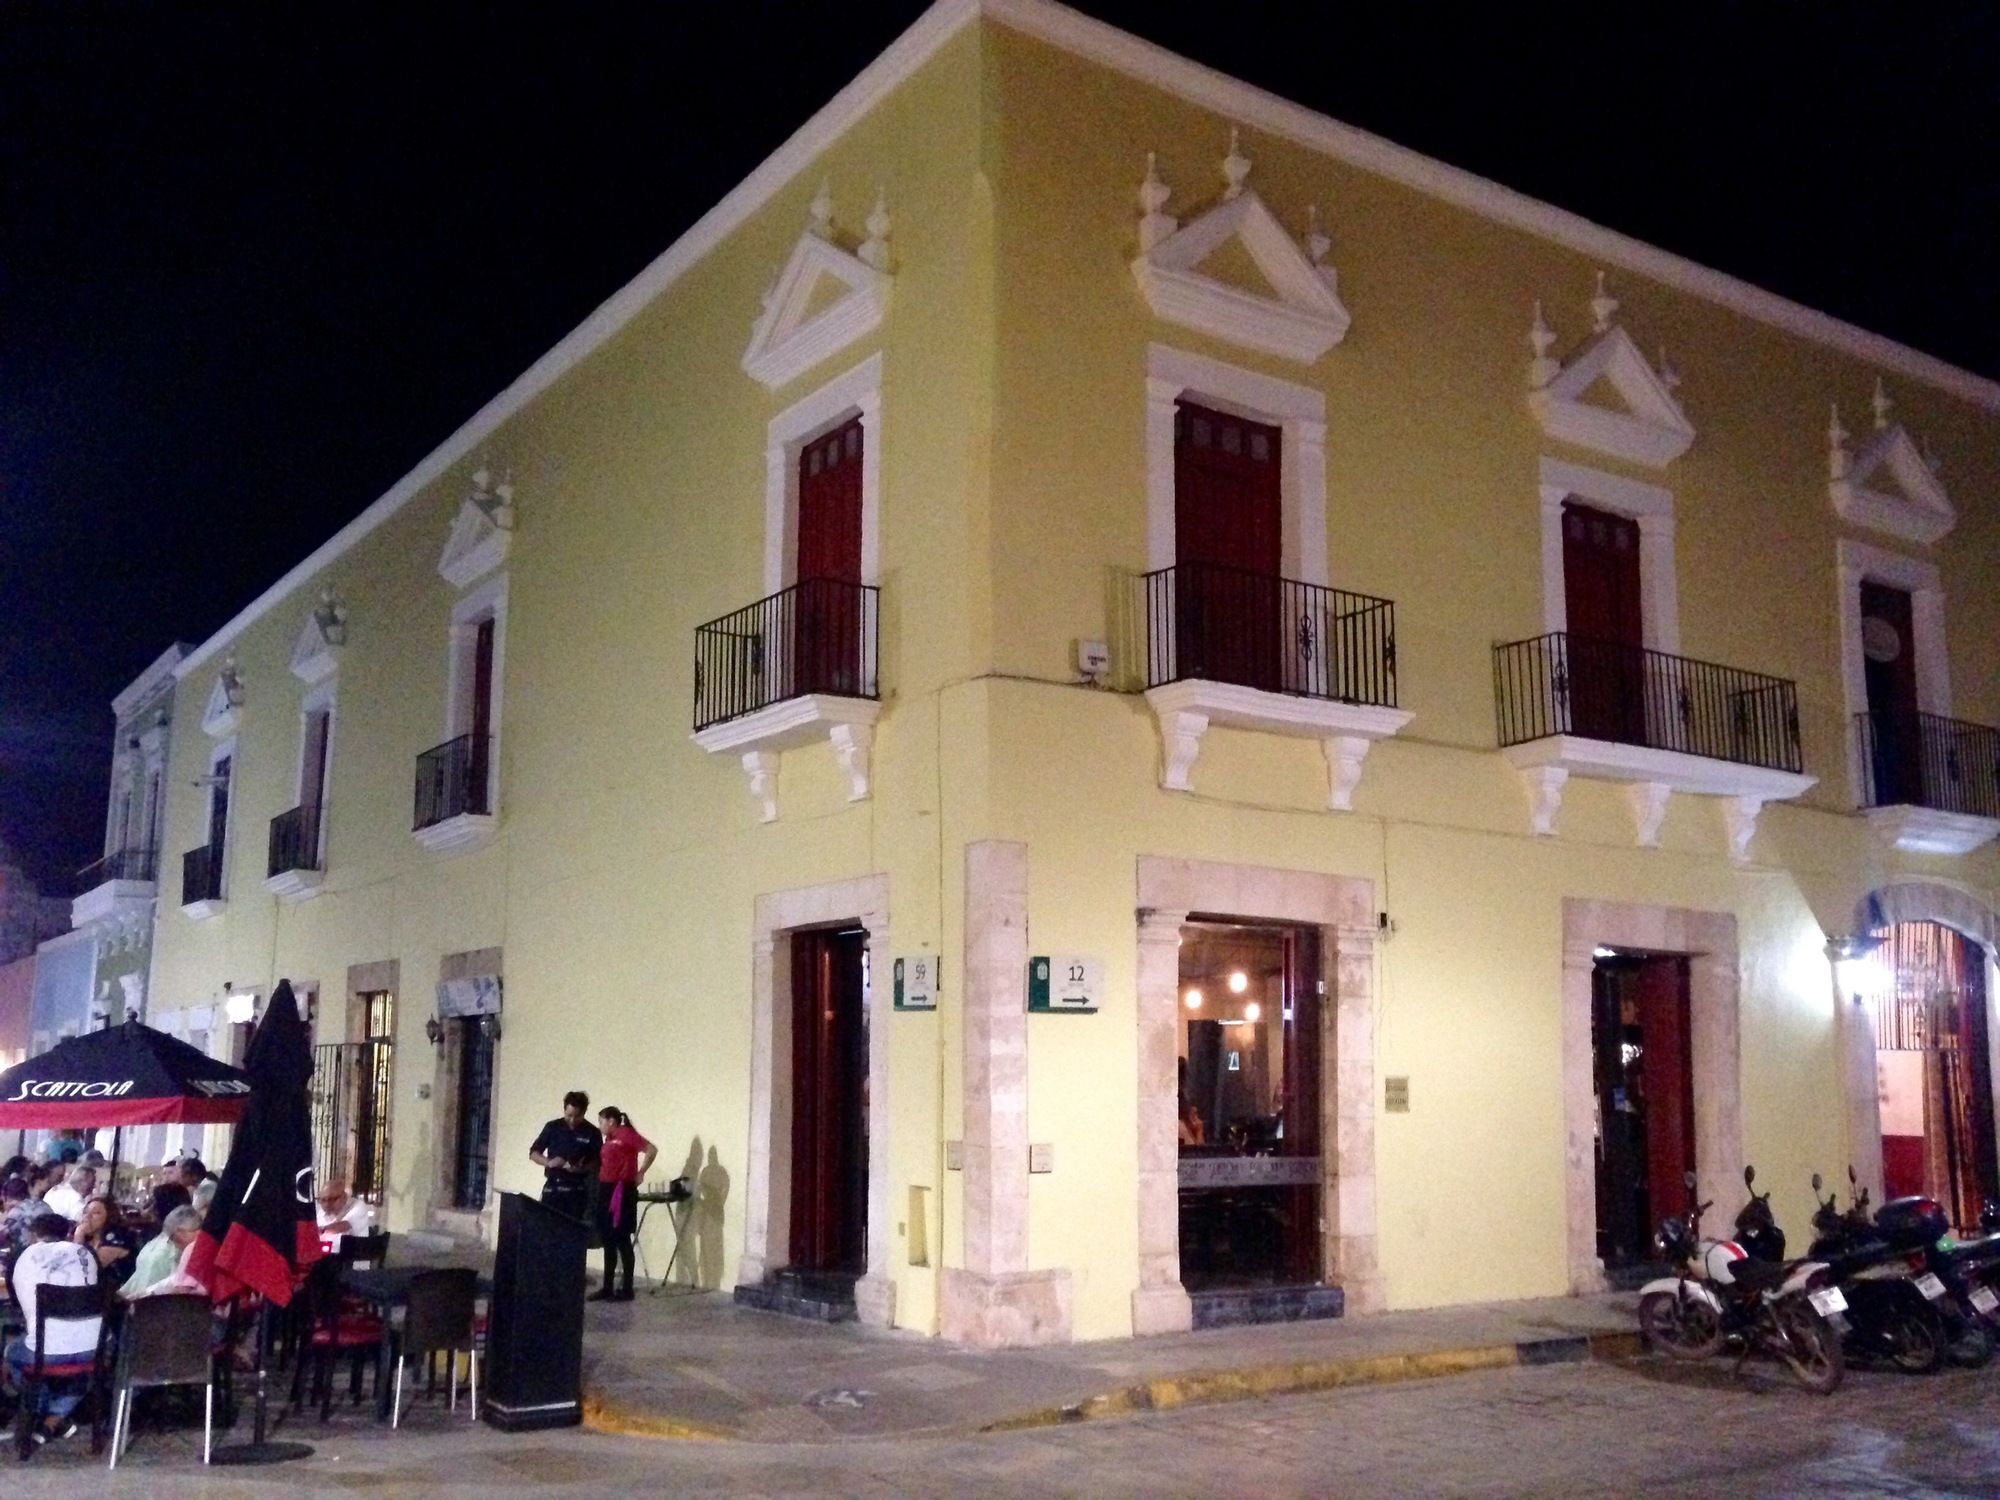 Hotel Maya Ah Kim Pech De La 59 Campeche Exterior foto